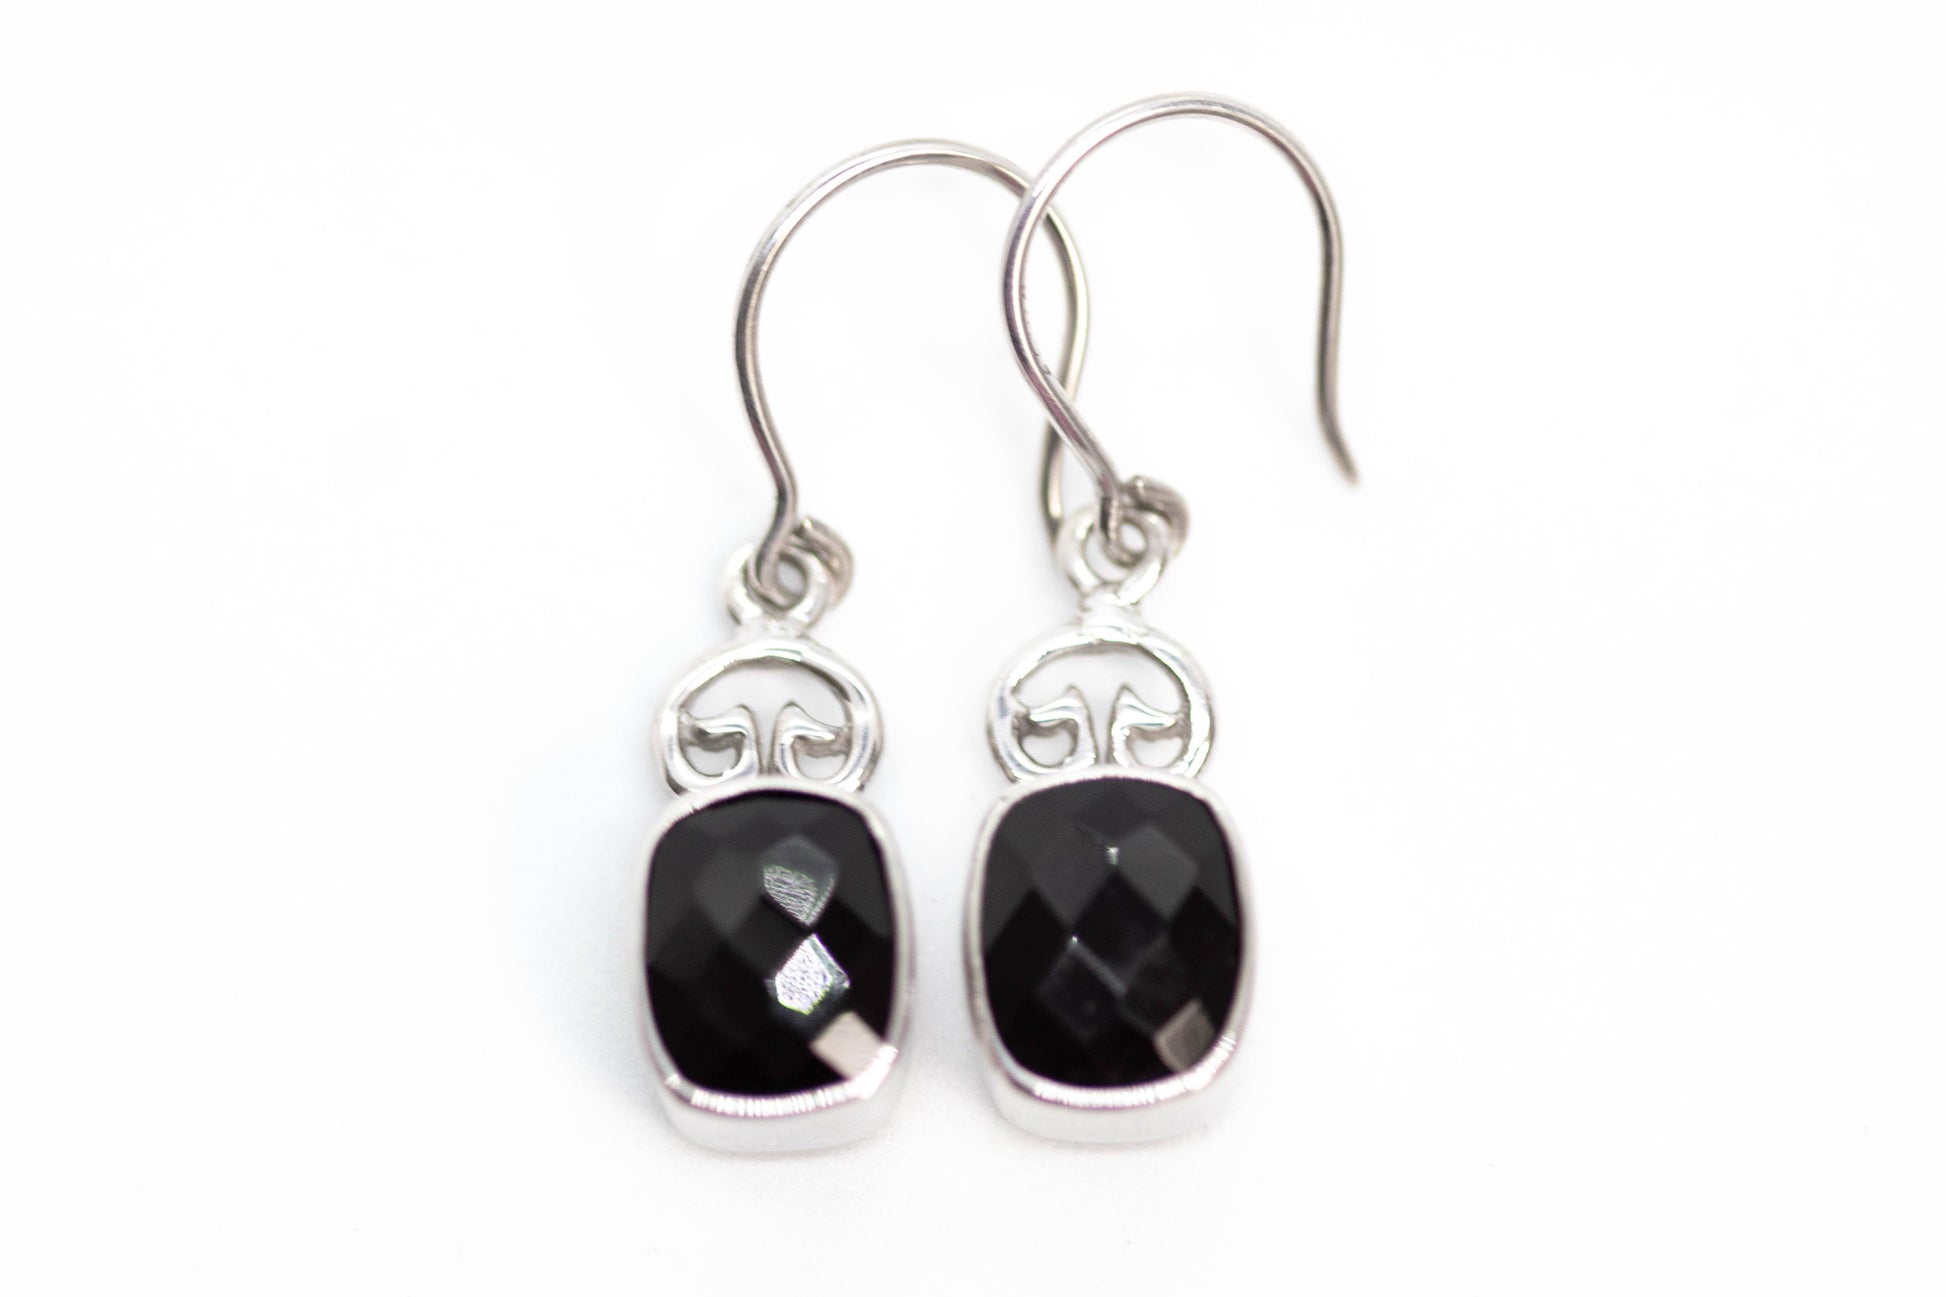 Coral Bay Earrings Earrings Black Onyx